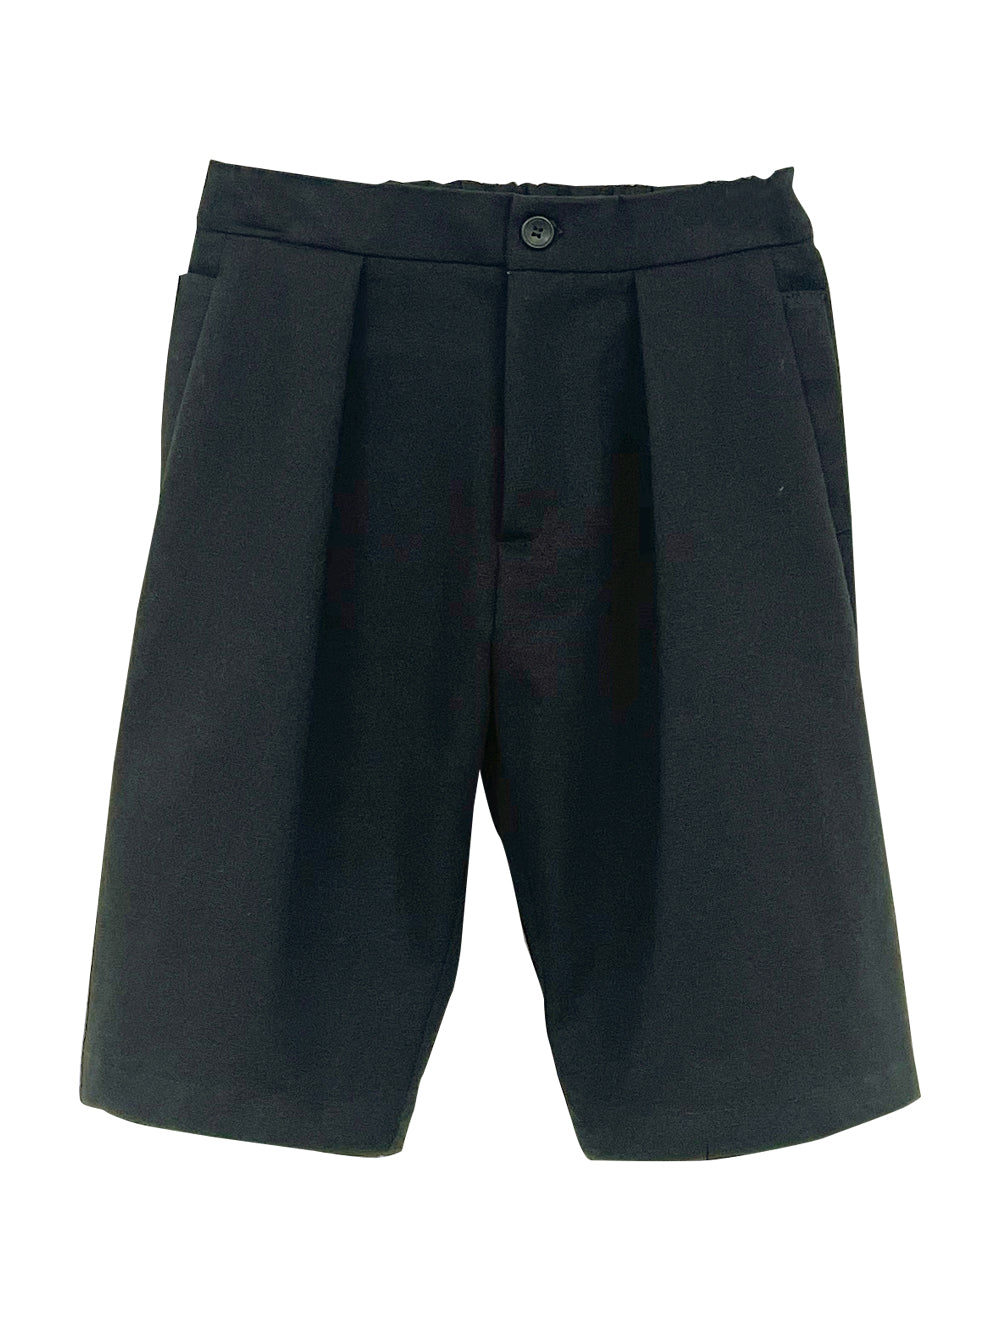 Paki Black Shorts